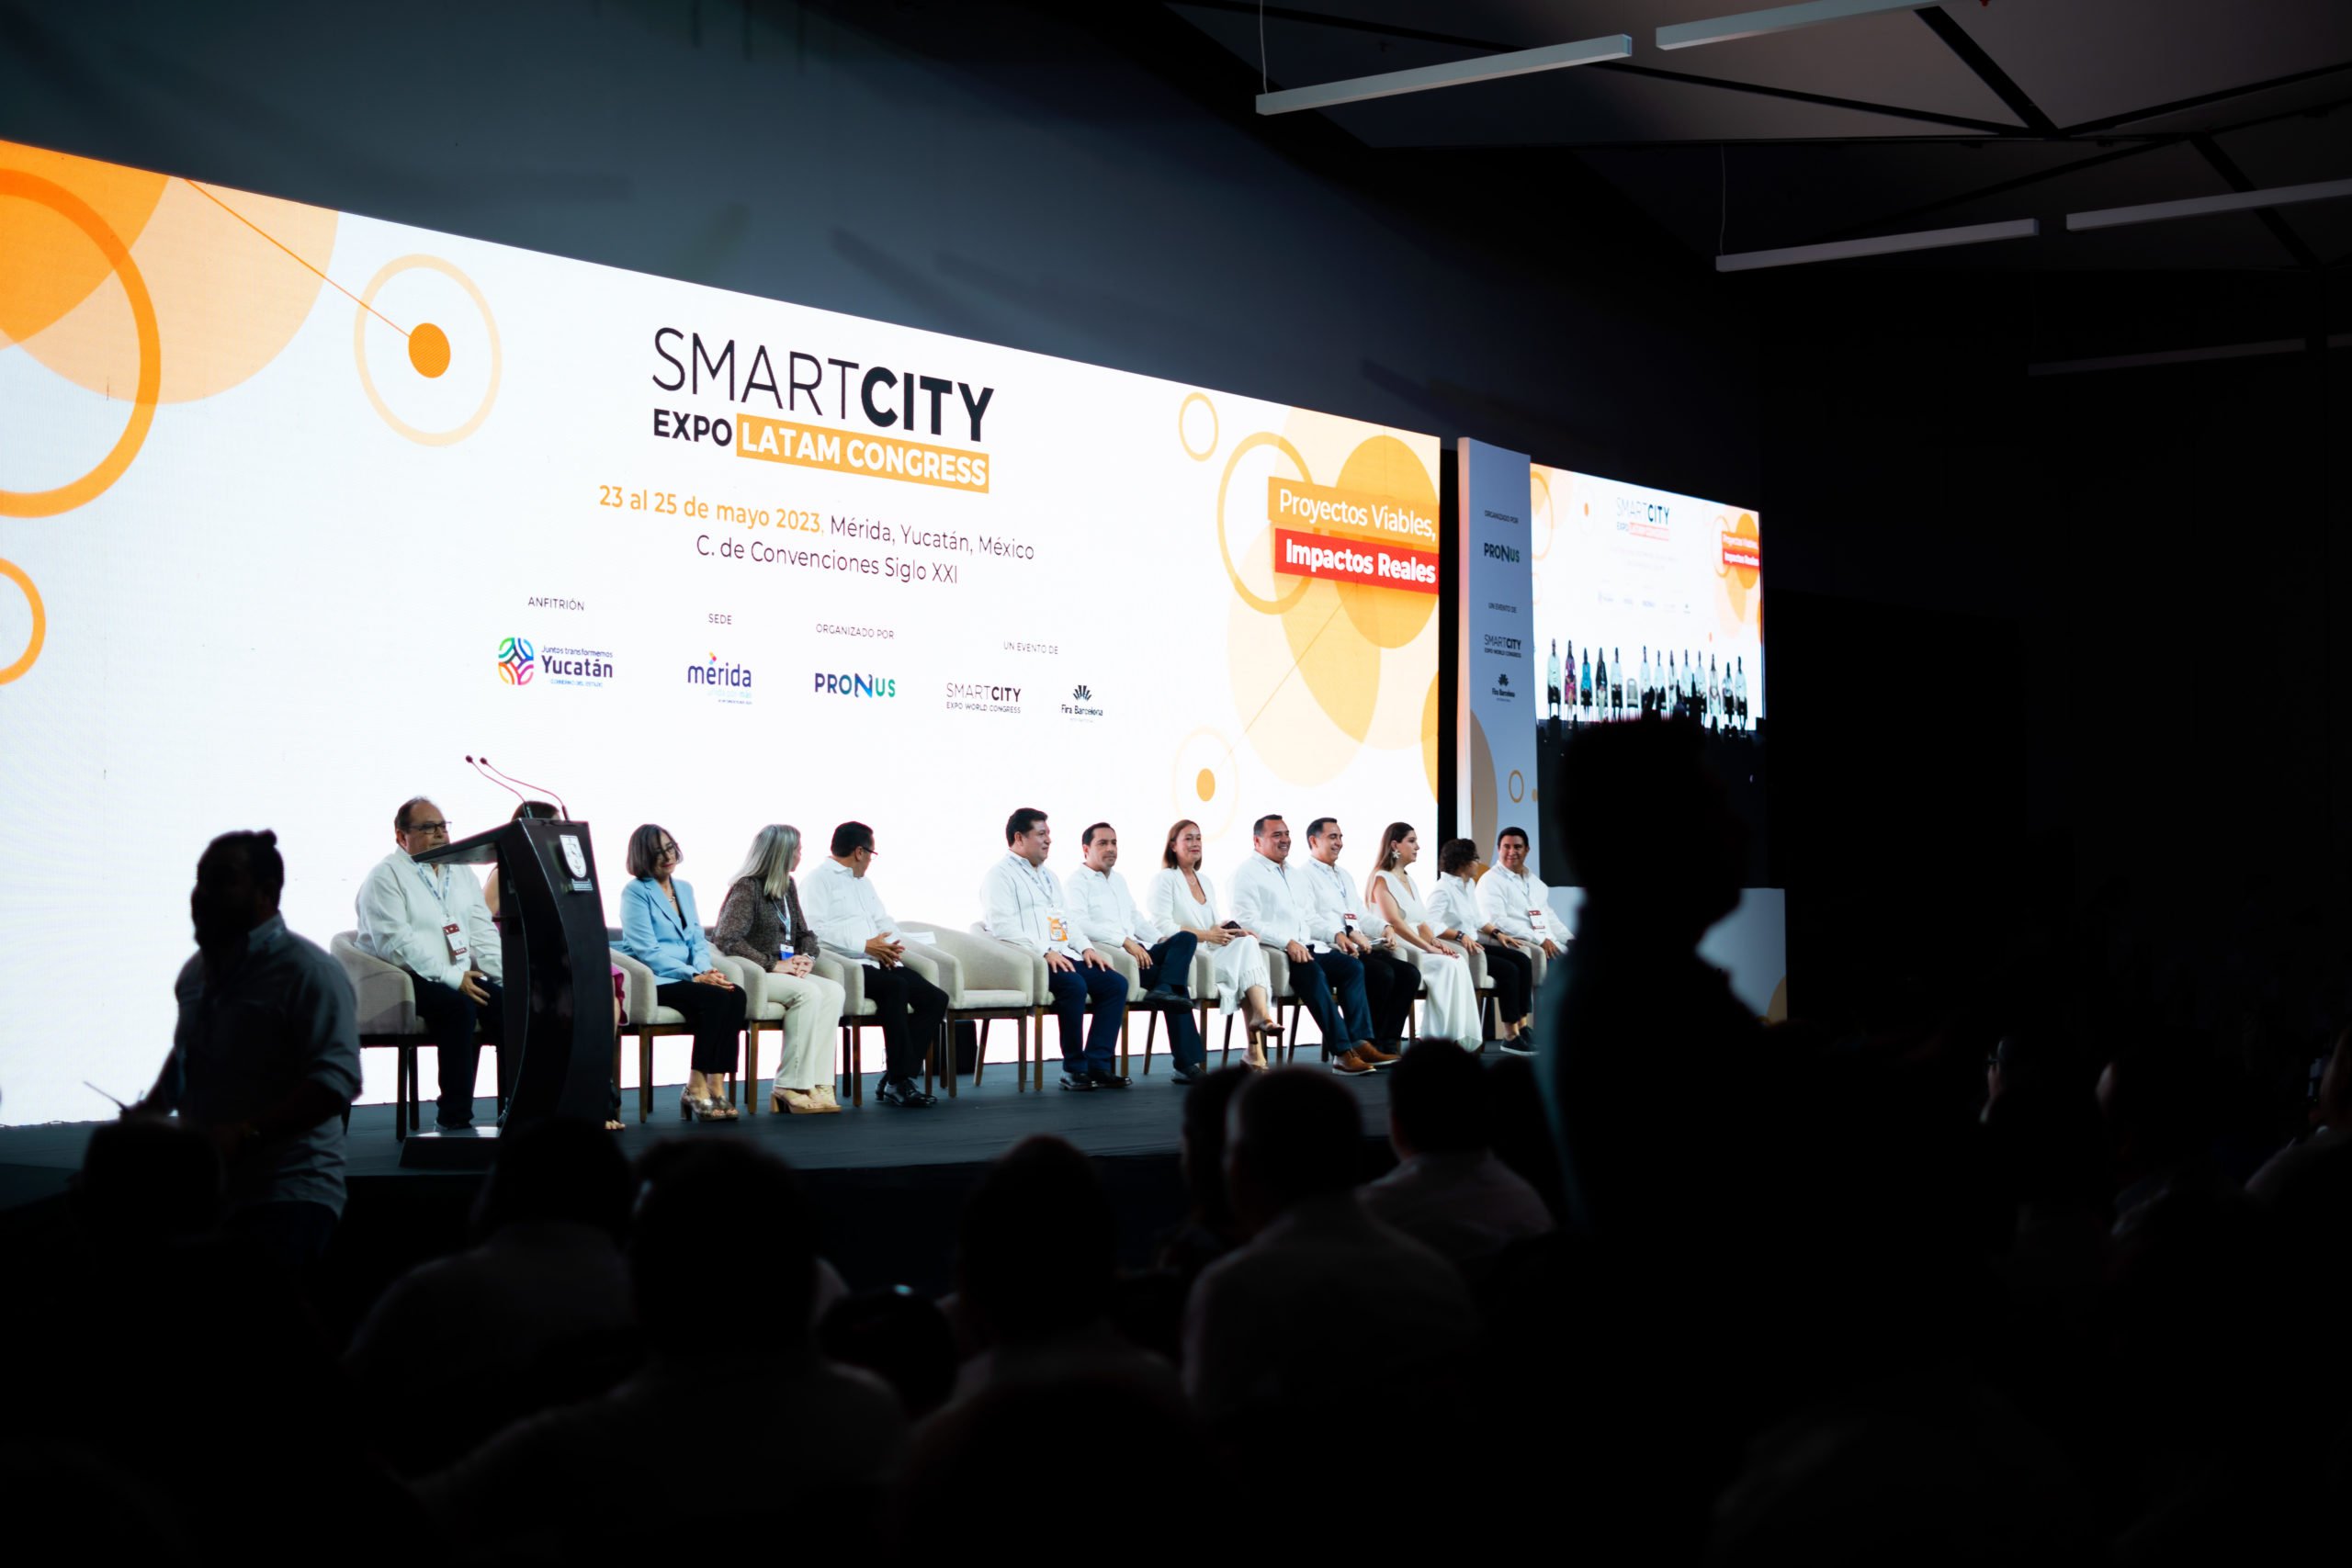 MOBILITY ADO, referente en sostenibilidad y movilidad inteligente de cara a las ciudades del futuro